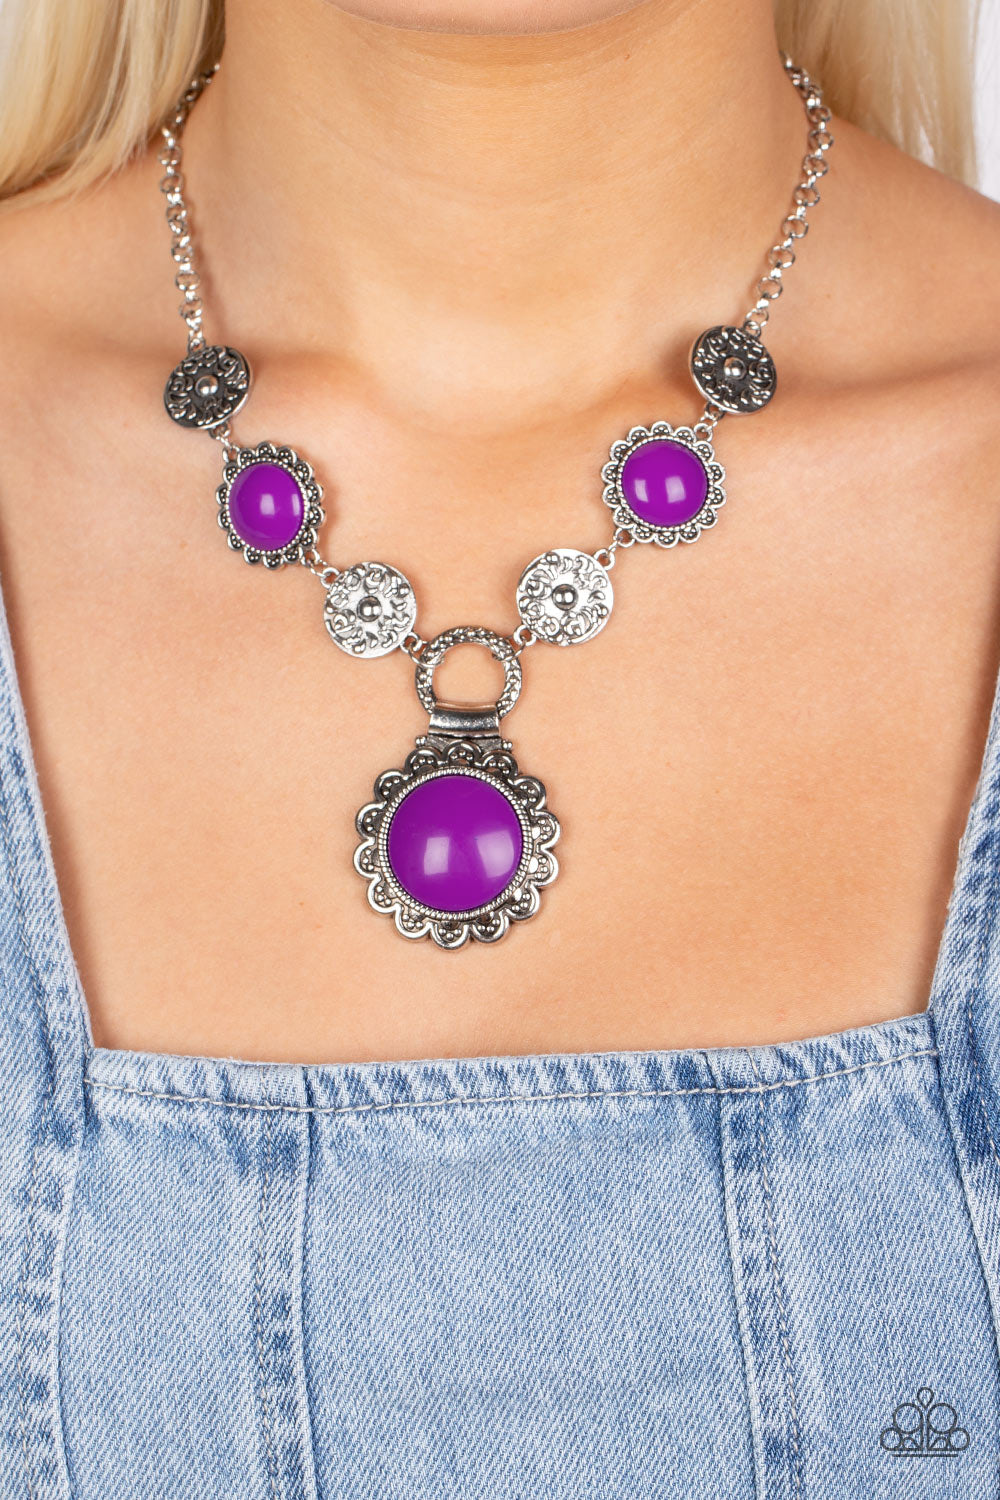 Paparazzi “Poppy Persuasion” Purple Necklace Earring Set - Cindysblingboutique